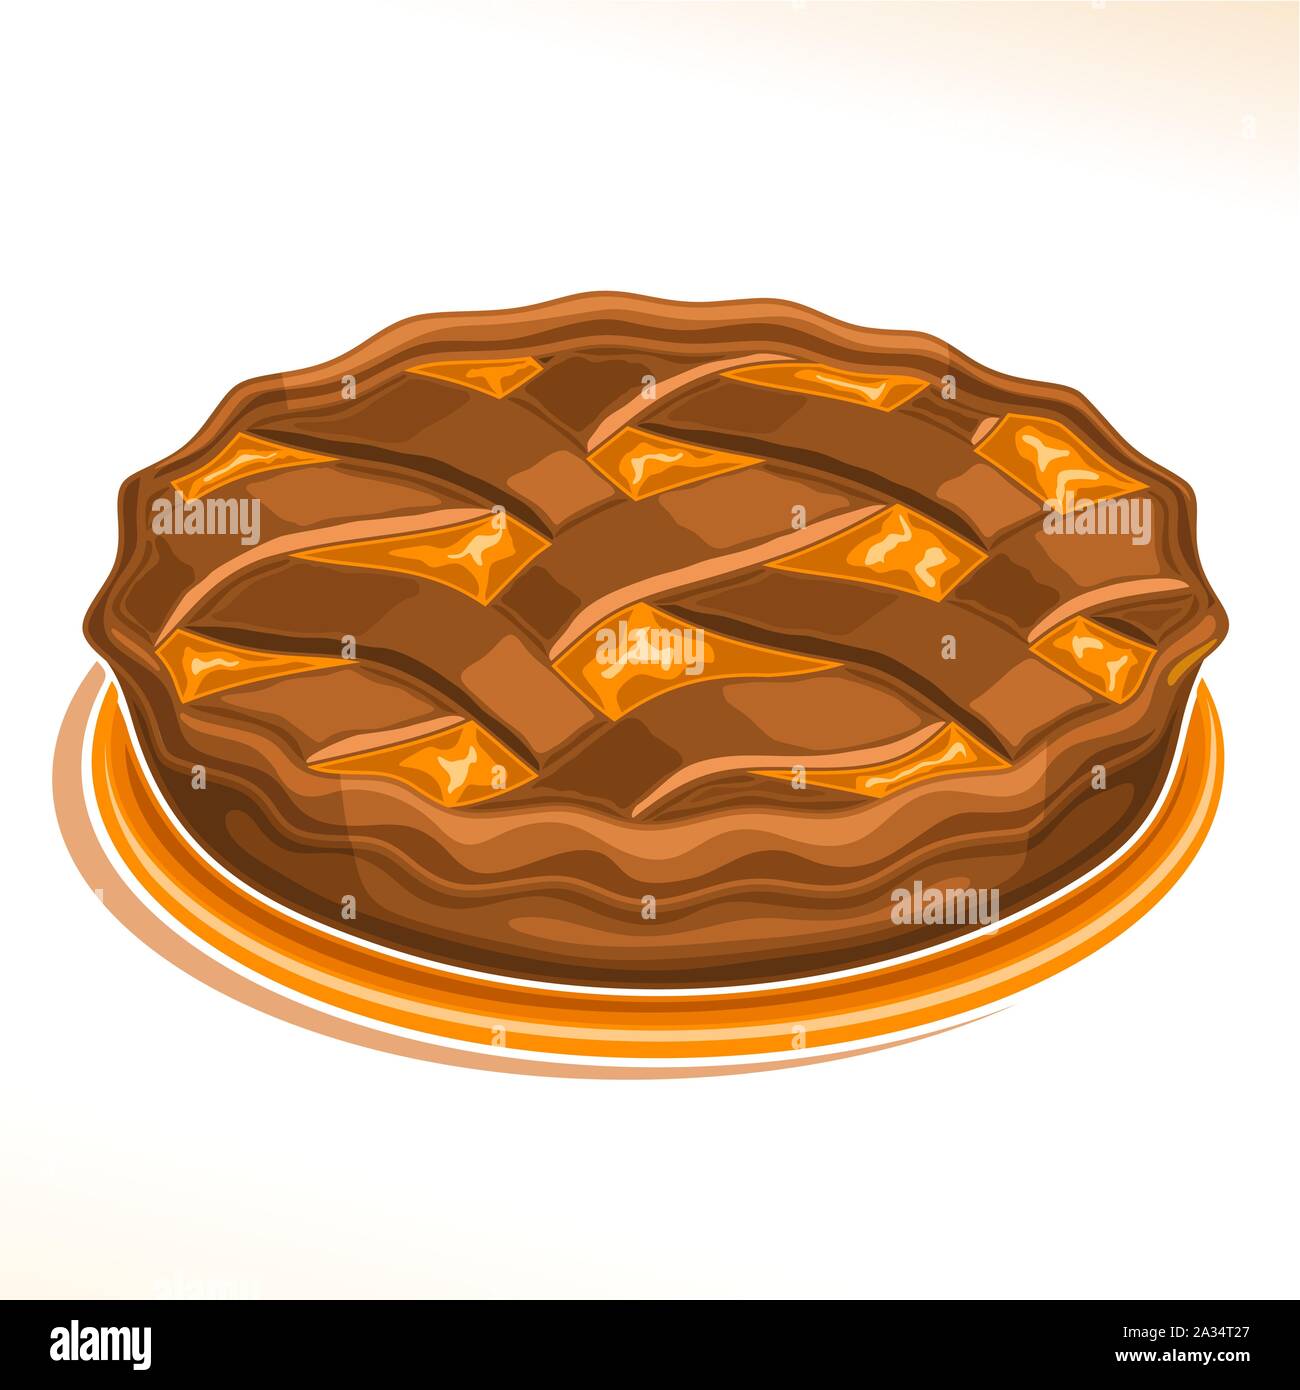 Illustrazione Vettoriale di cioccolato torta fatta in casa di pasticceria fresca con ripieno di frutta sul piatto isolato su sfondo bianco, tradizionale torta di pesche dess Illustrazione Vettoriale